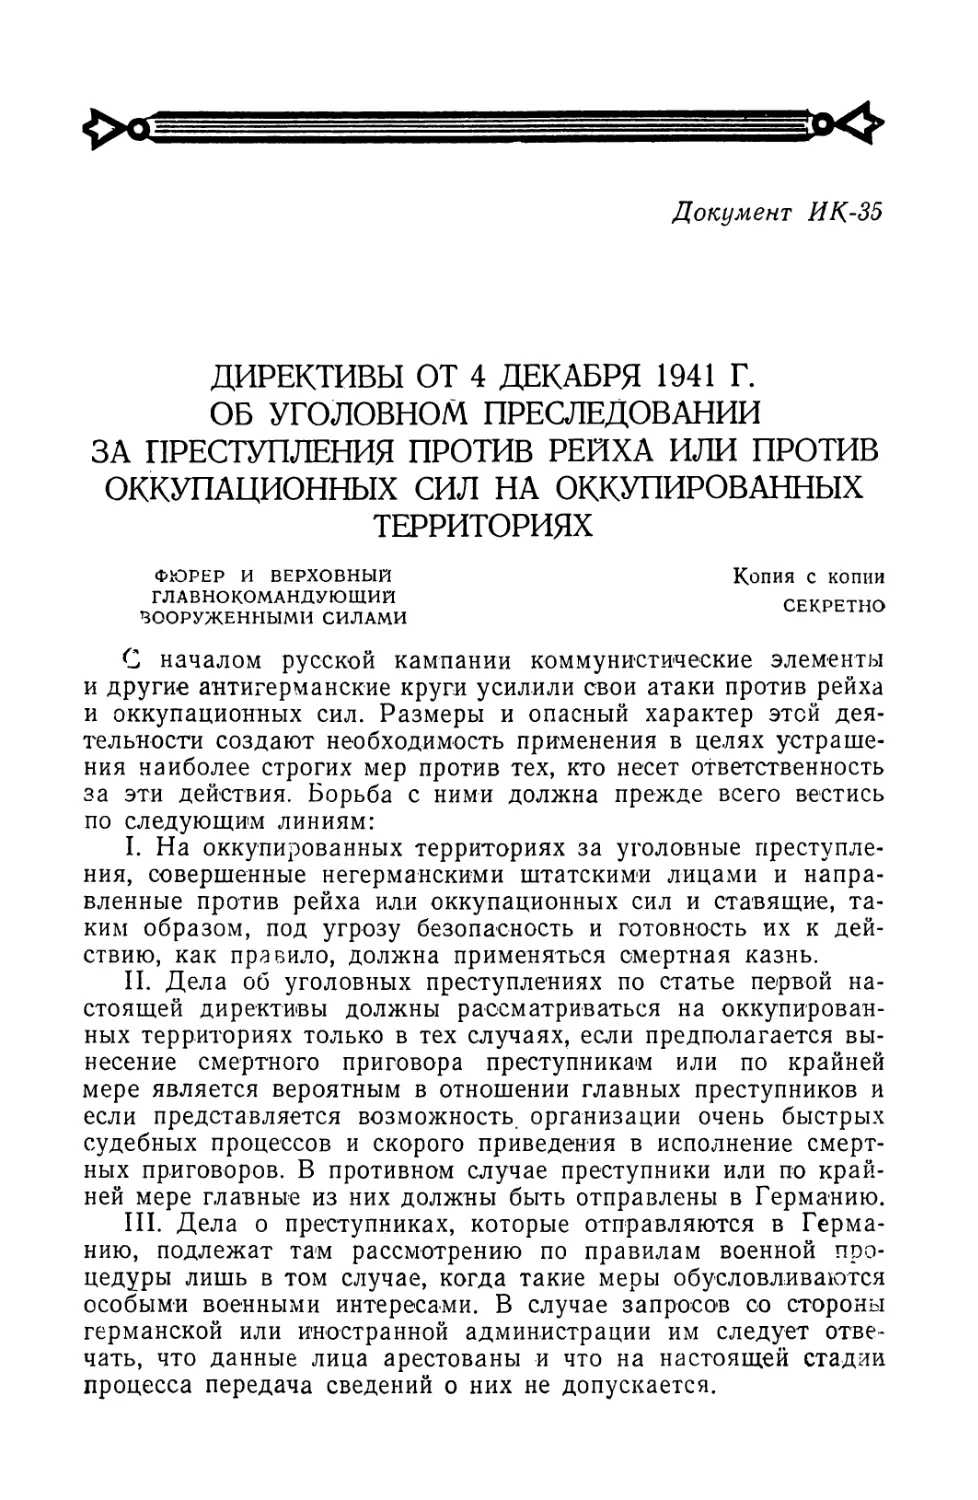 Директивы от 4 декабря 1941 г. об уголовном преследовании за преступления против рейха или против оккупационных сил на оккупированных территориях